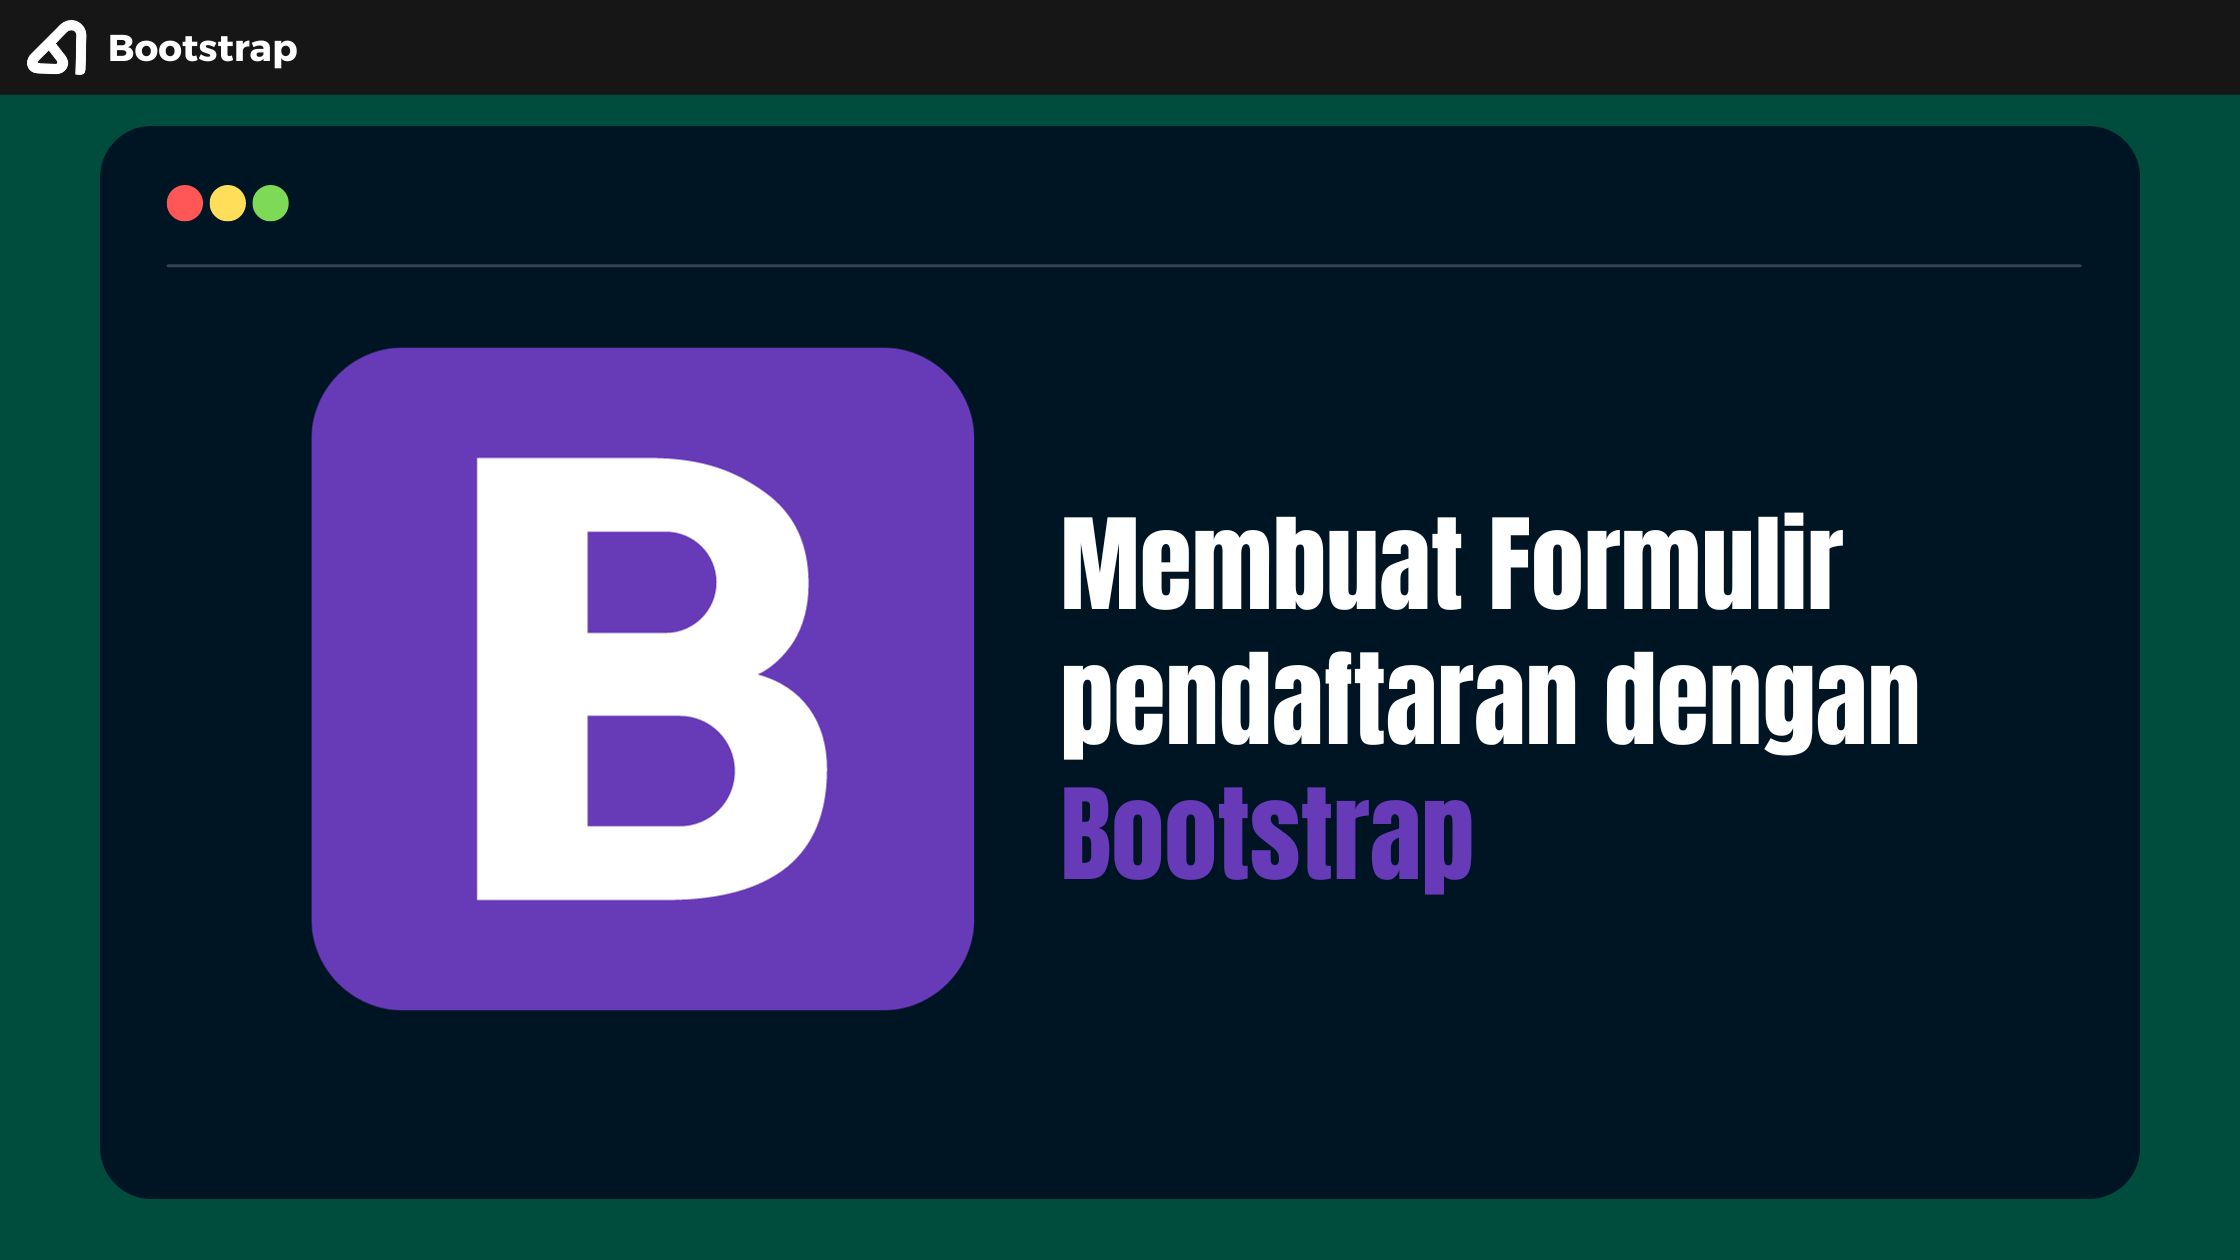 Membuat Formulir pendaftaran dengan Bootstrap